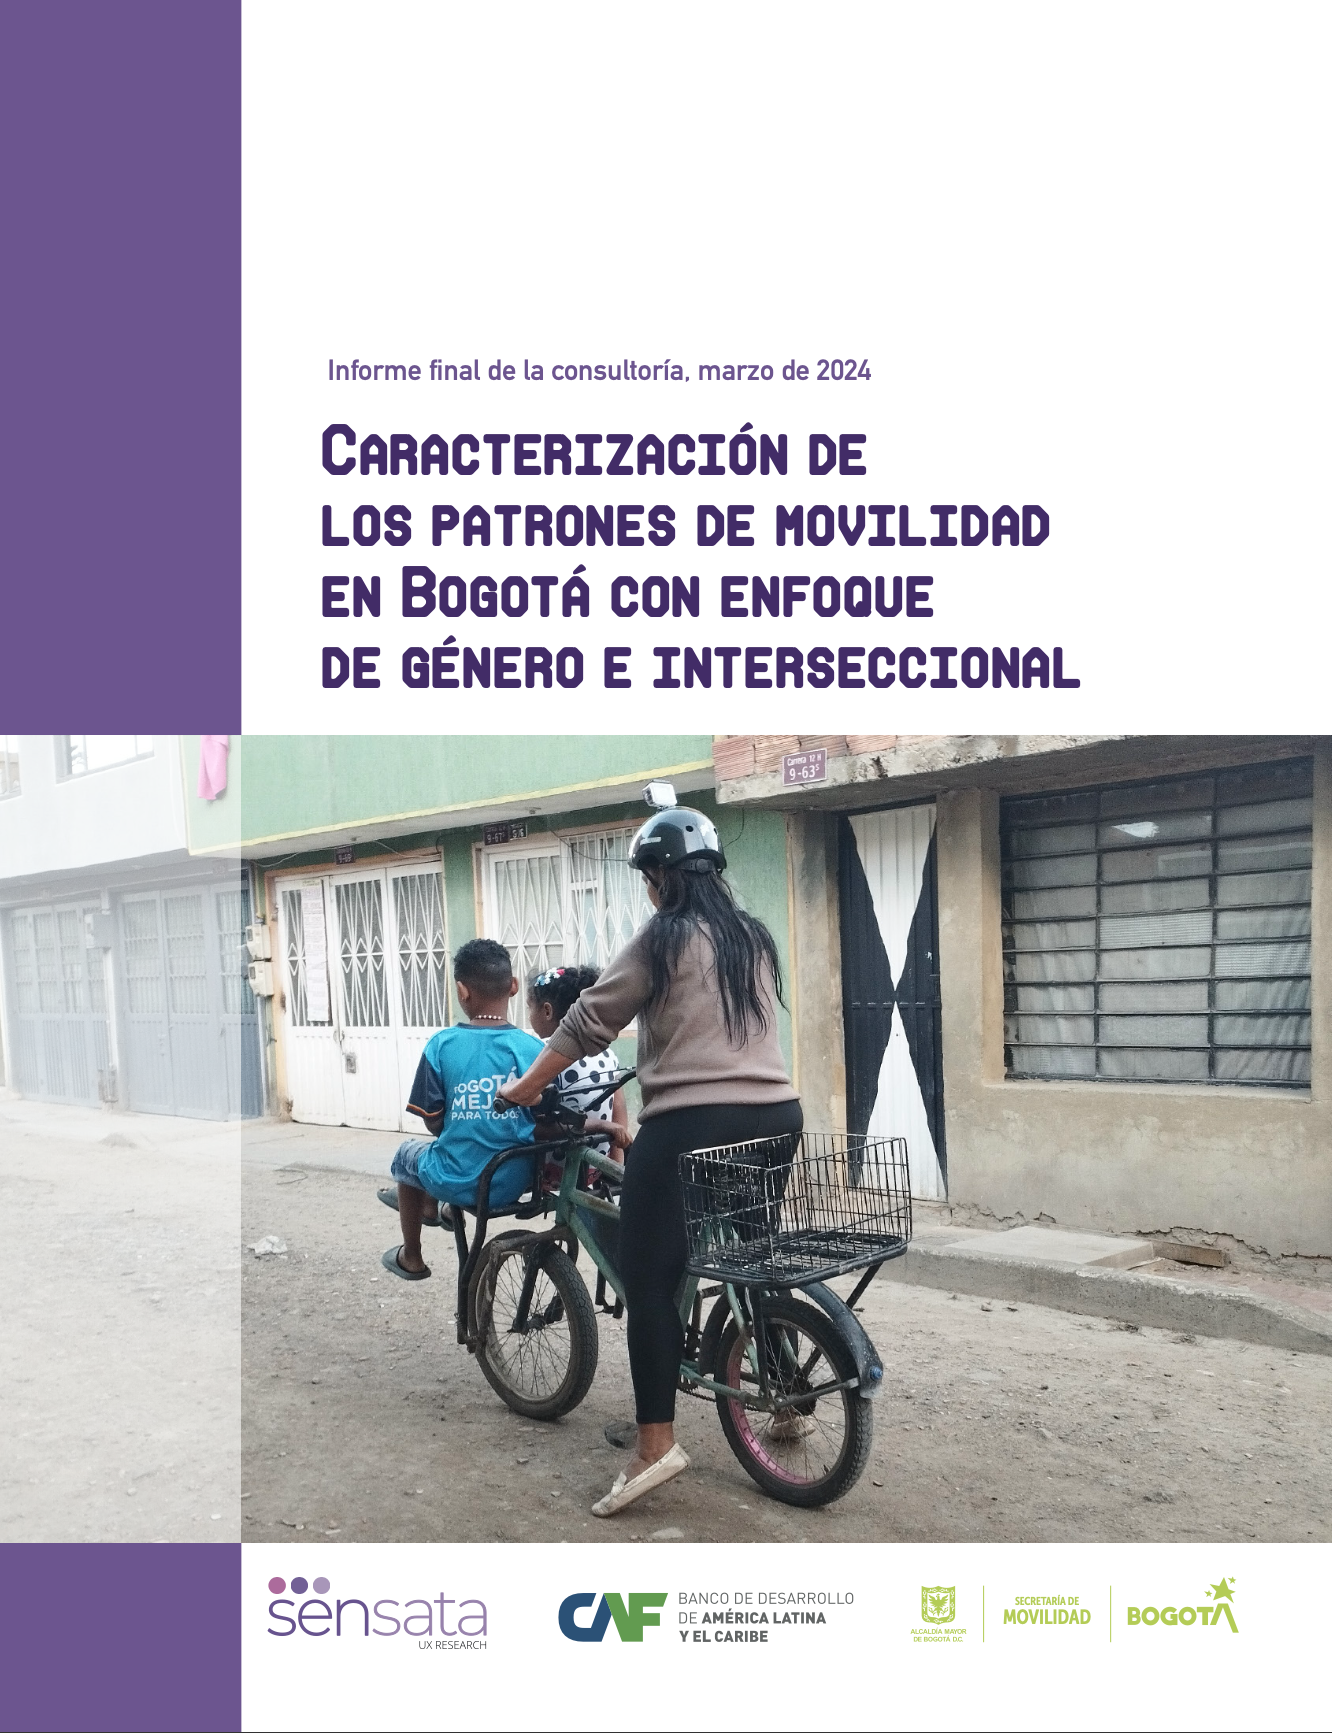 Caracterización de los patrones de movilidad en Bogotá con enfoque de género e interseccional